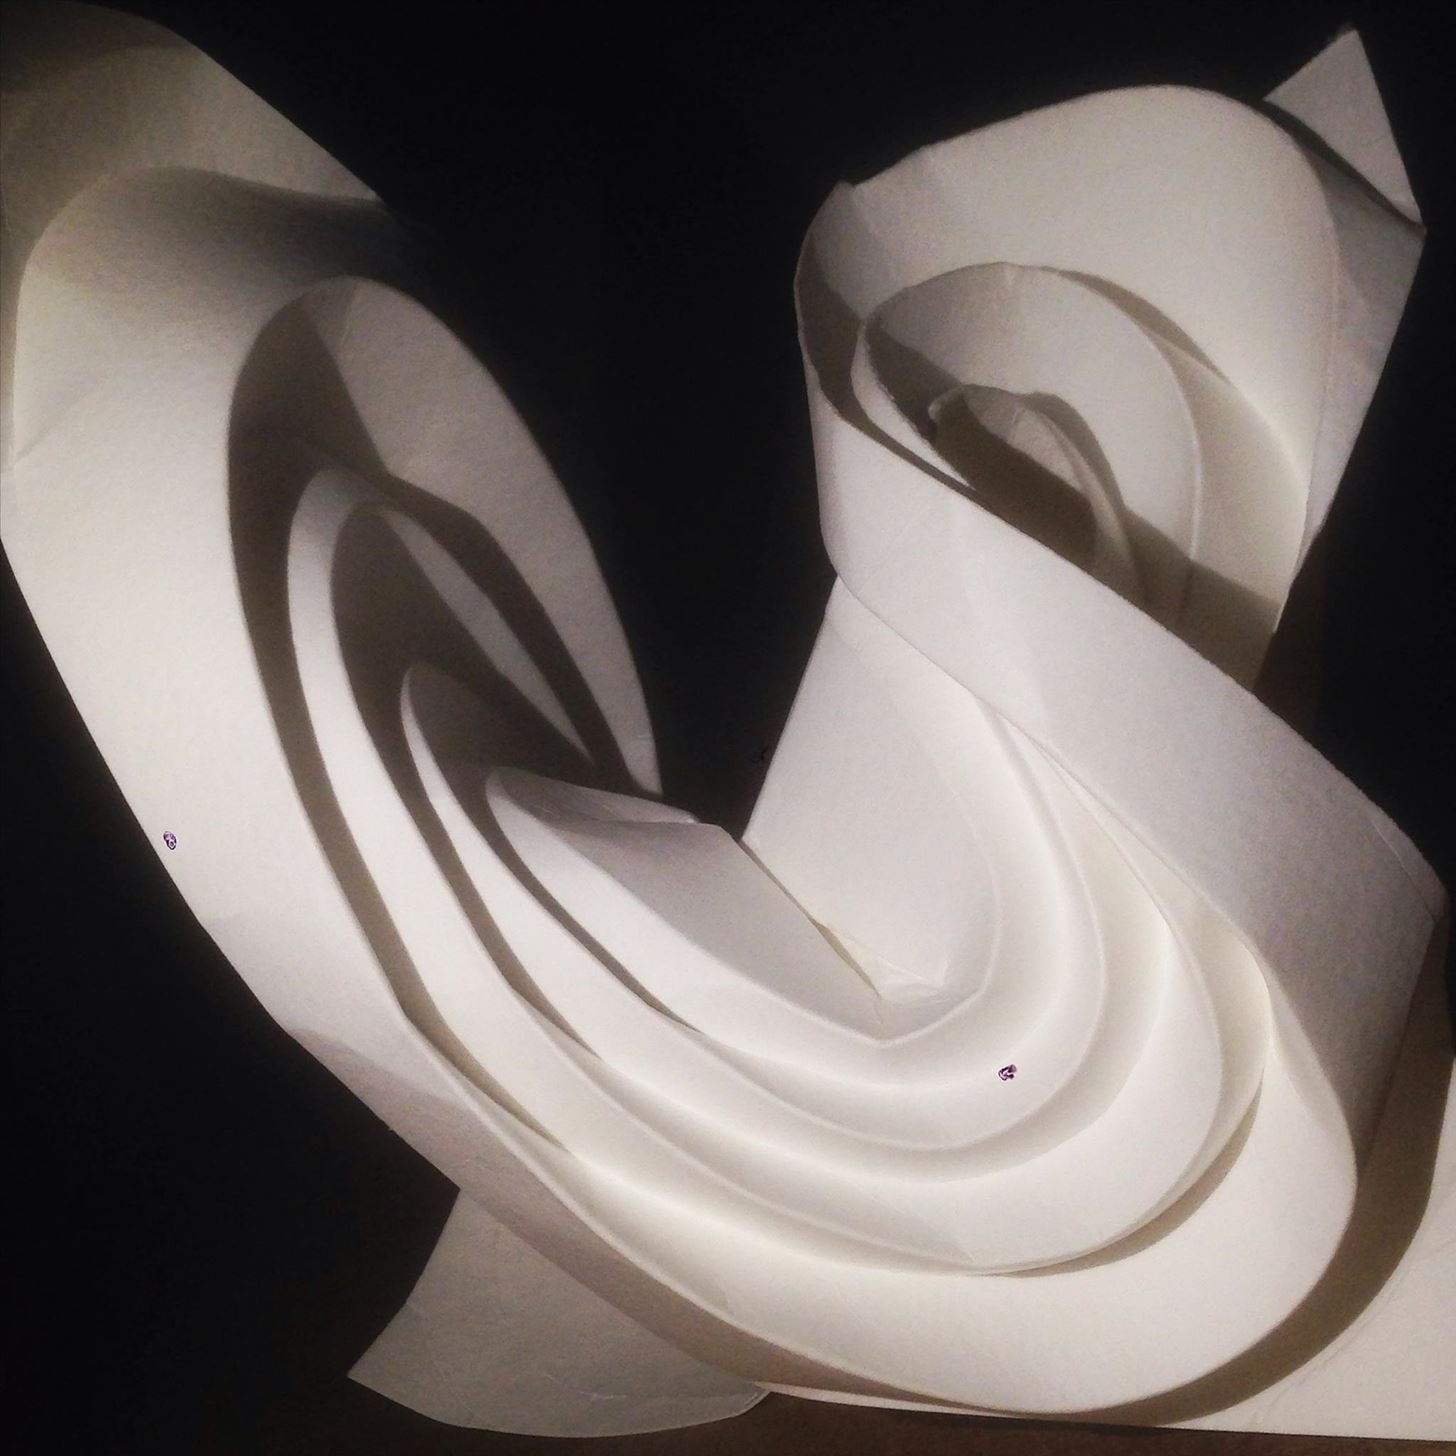 Curvy origami designs I am working on: